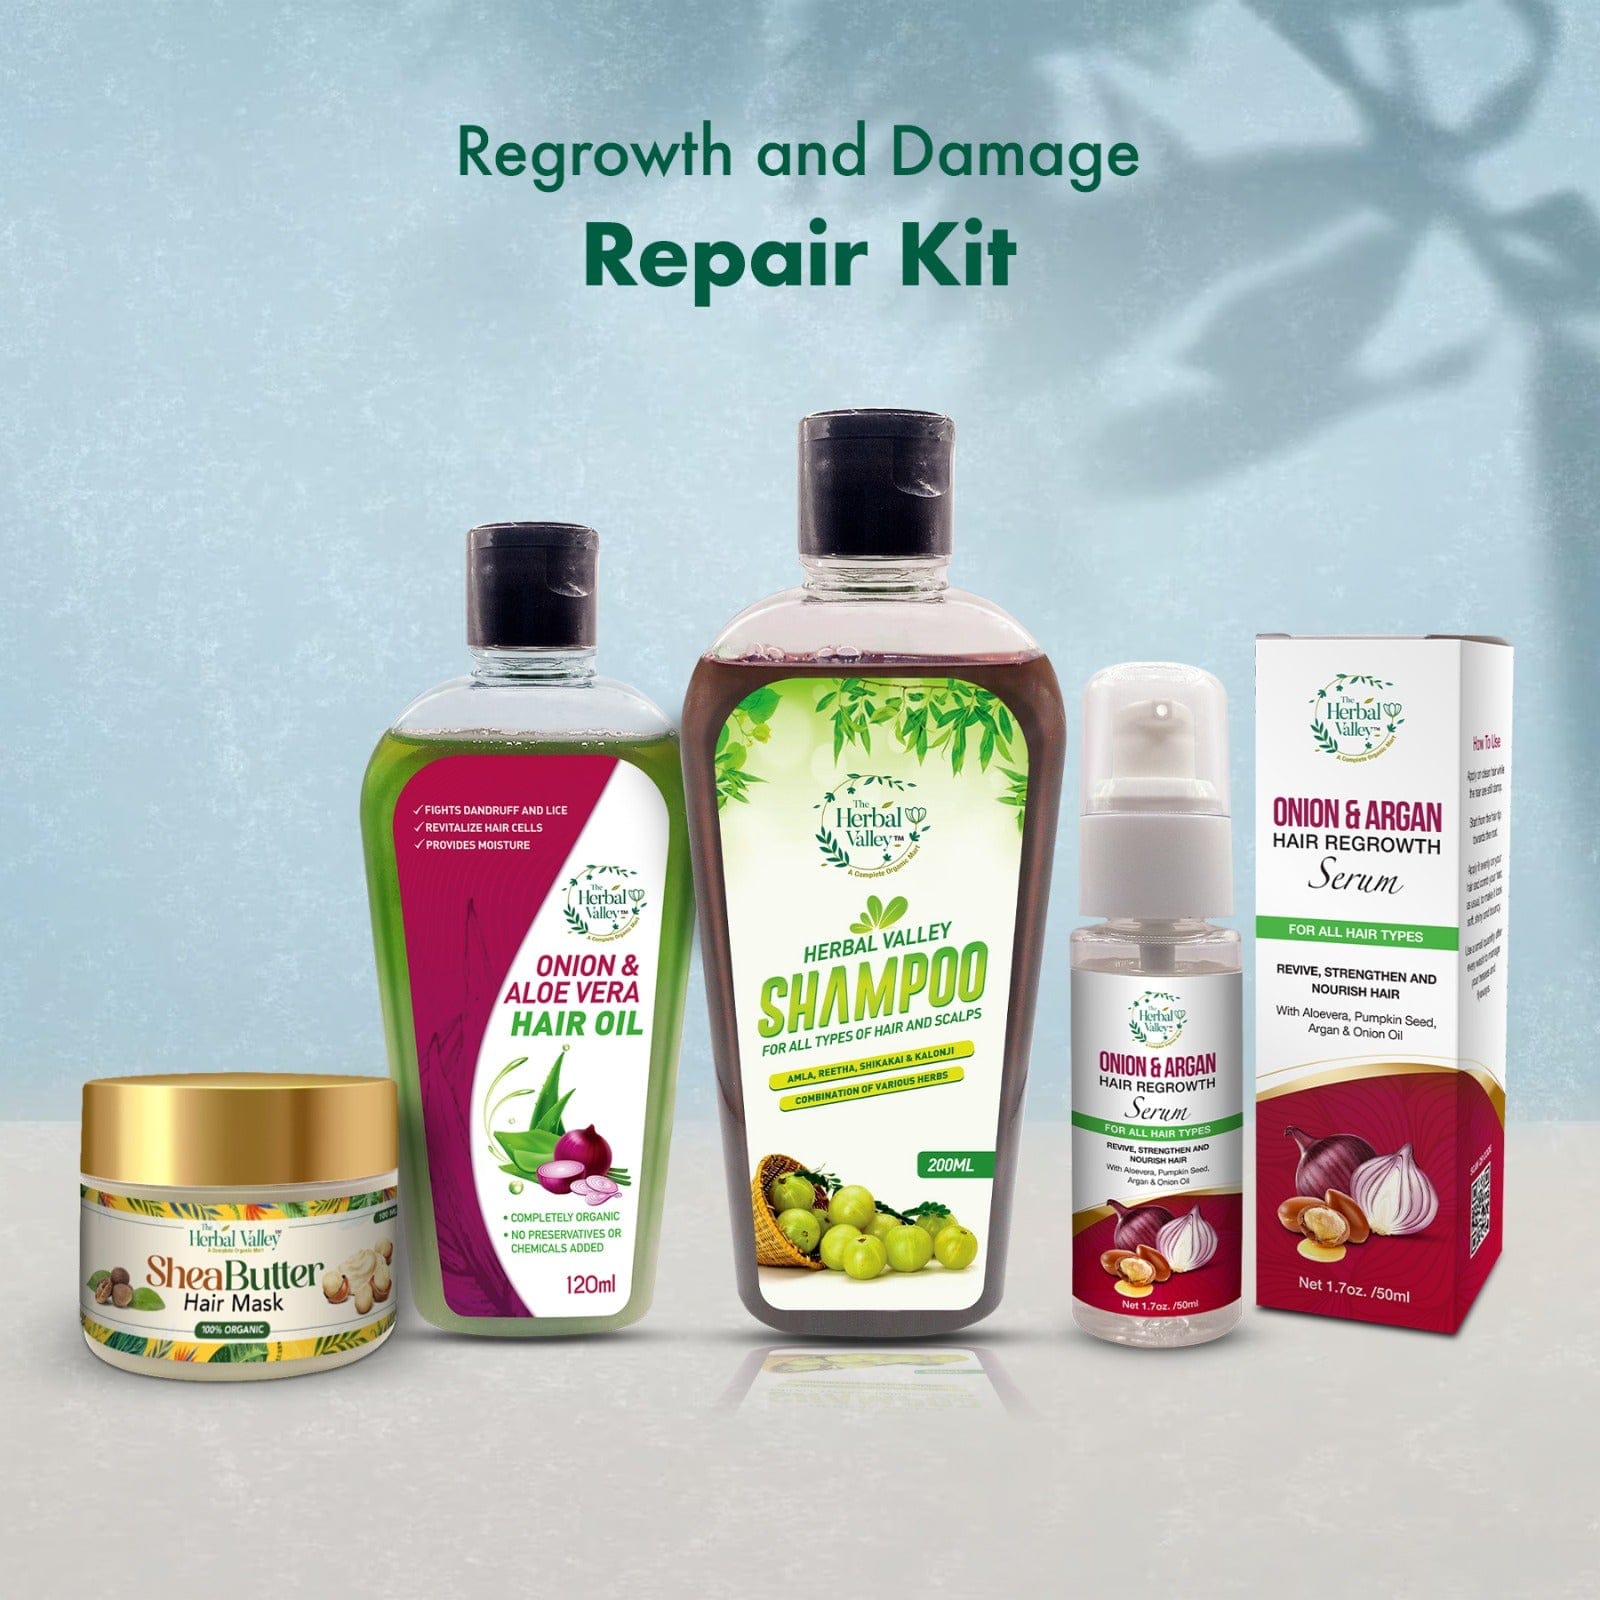 Regrowth and Damage Repair Kit